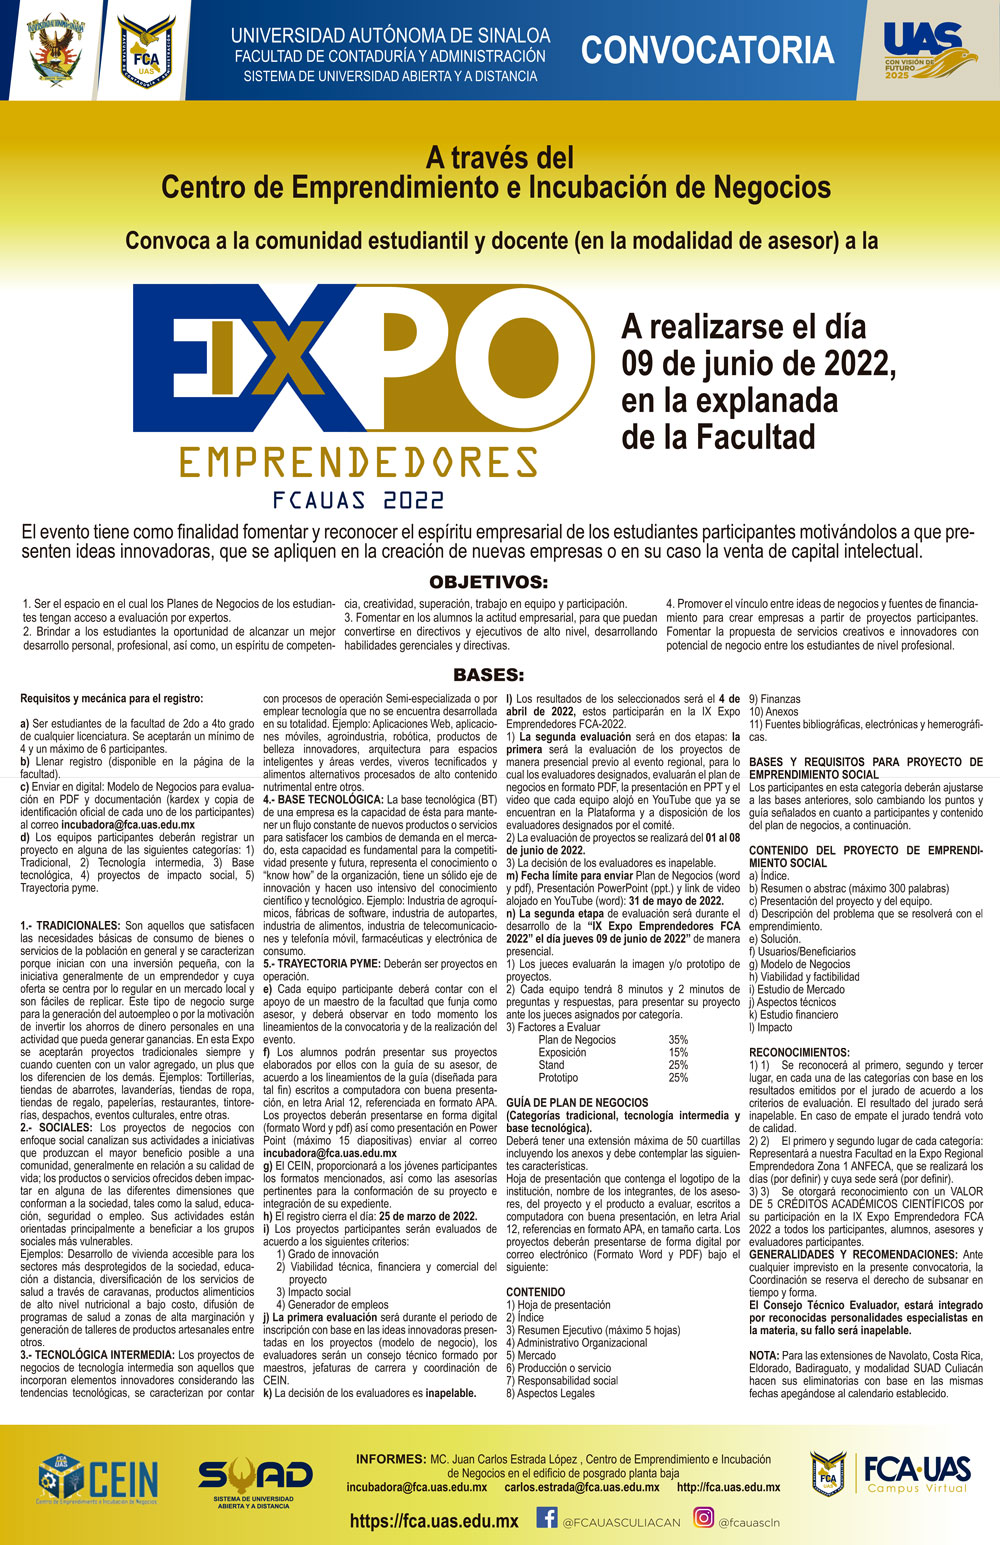 IX EXPO EMPRENDEDORES FCA 2022